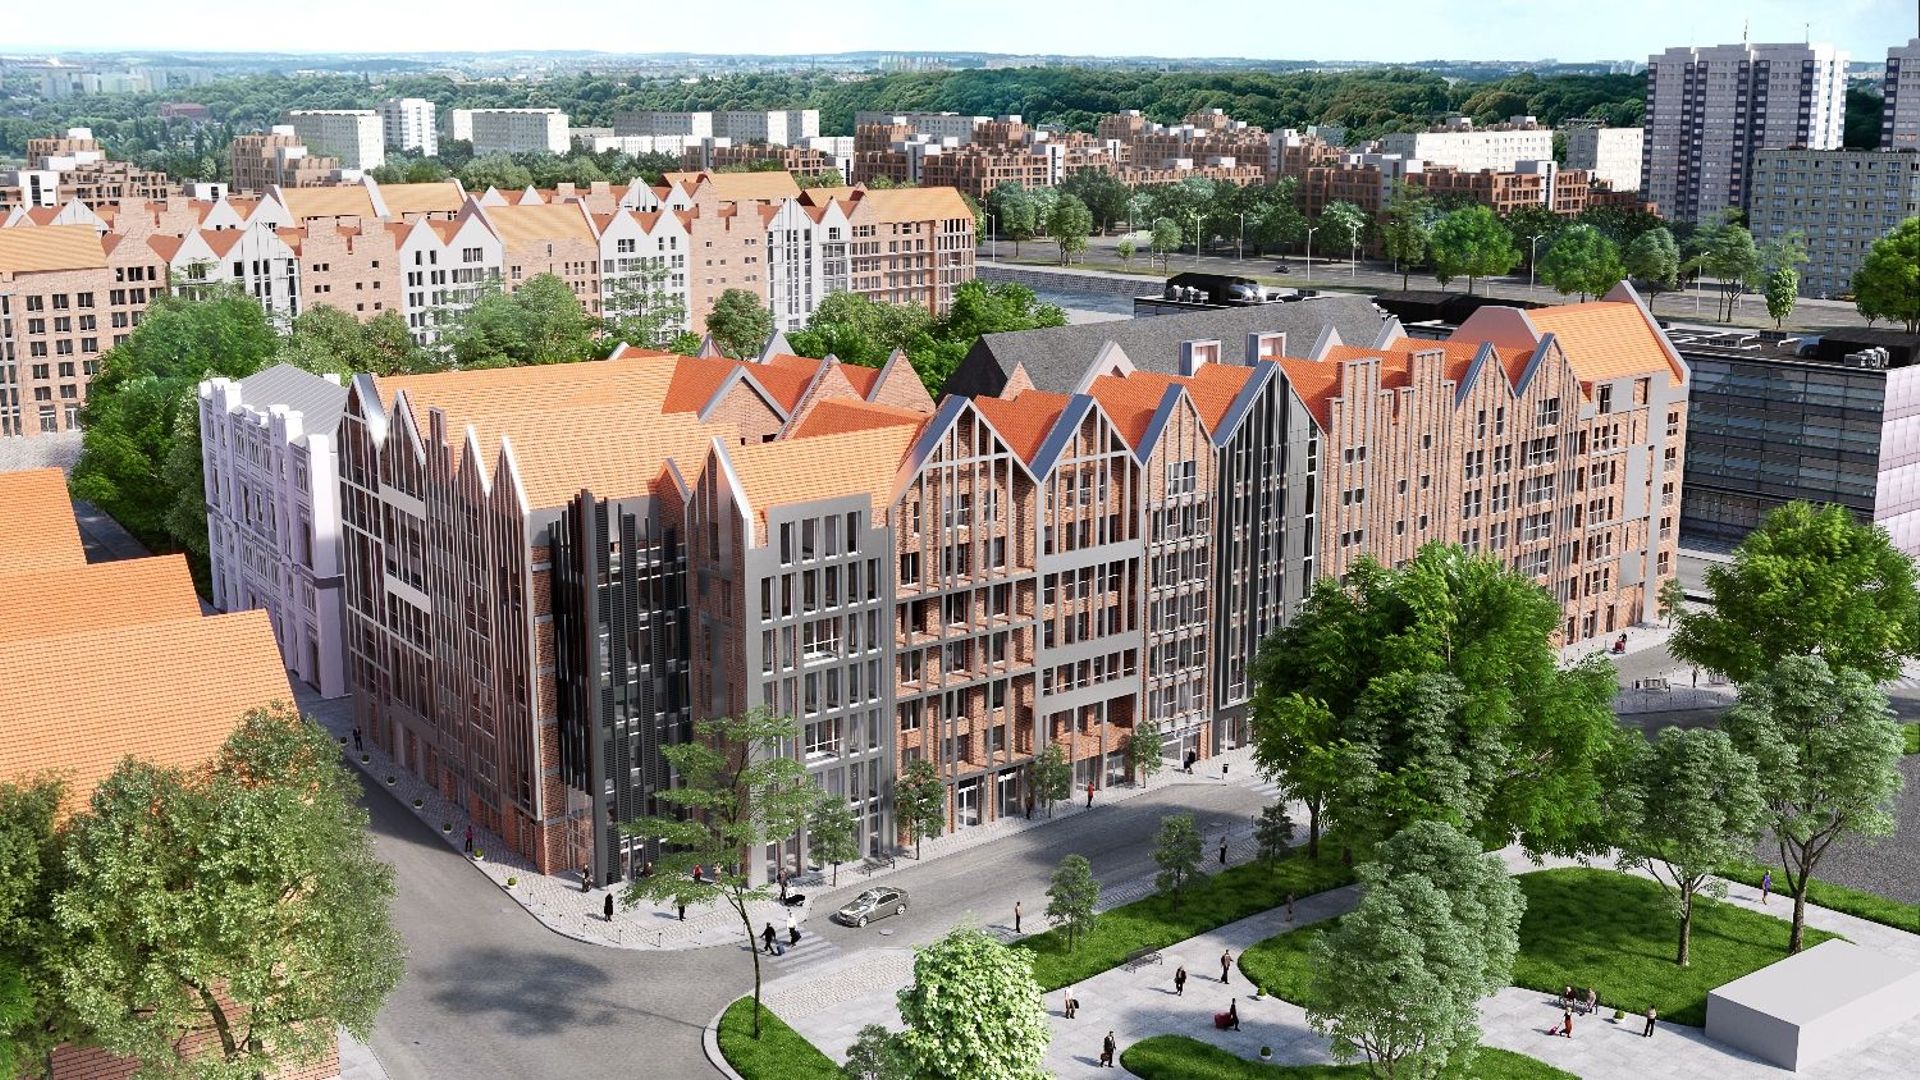  Grano Residence wpisuje się w architekturę Wyspy Spichrzów w Gdańsku